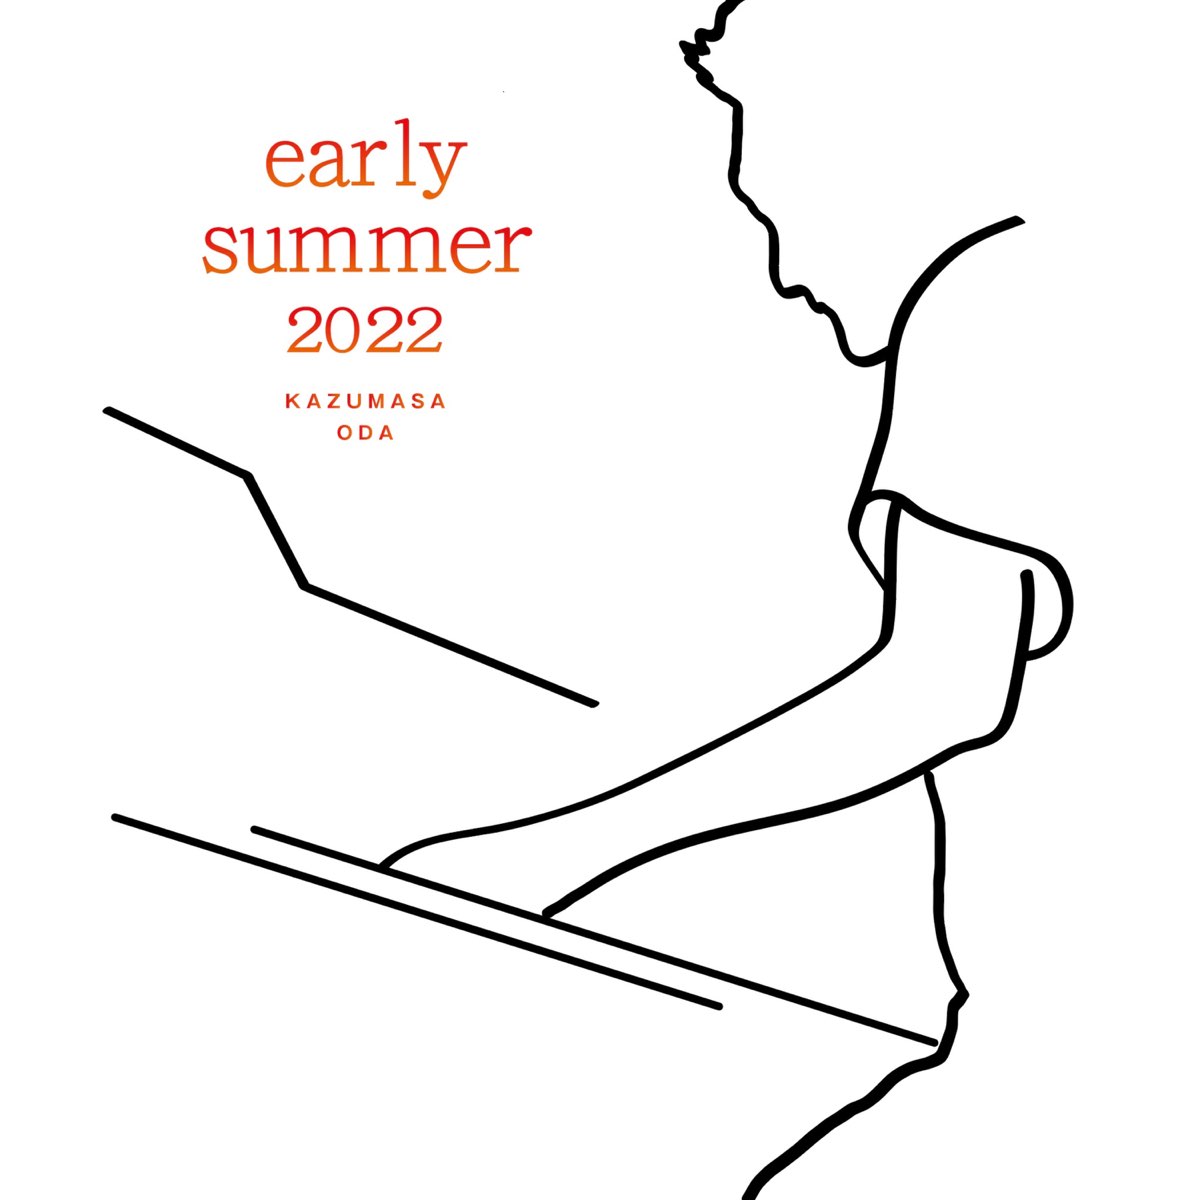 小田 和正の「early summer 2022」をApple Musicで